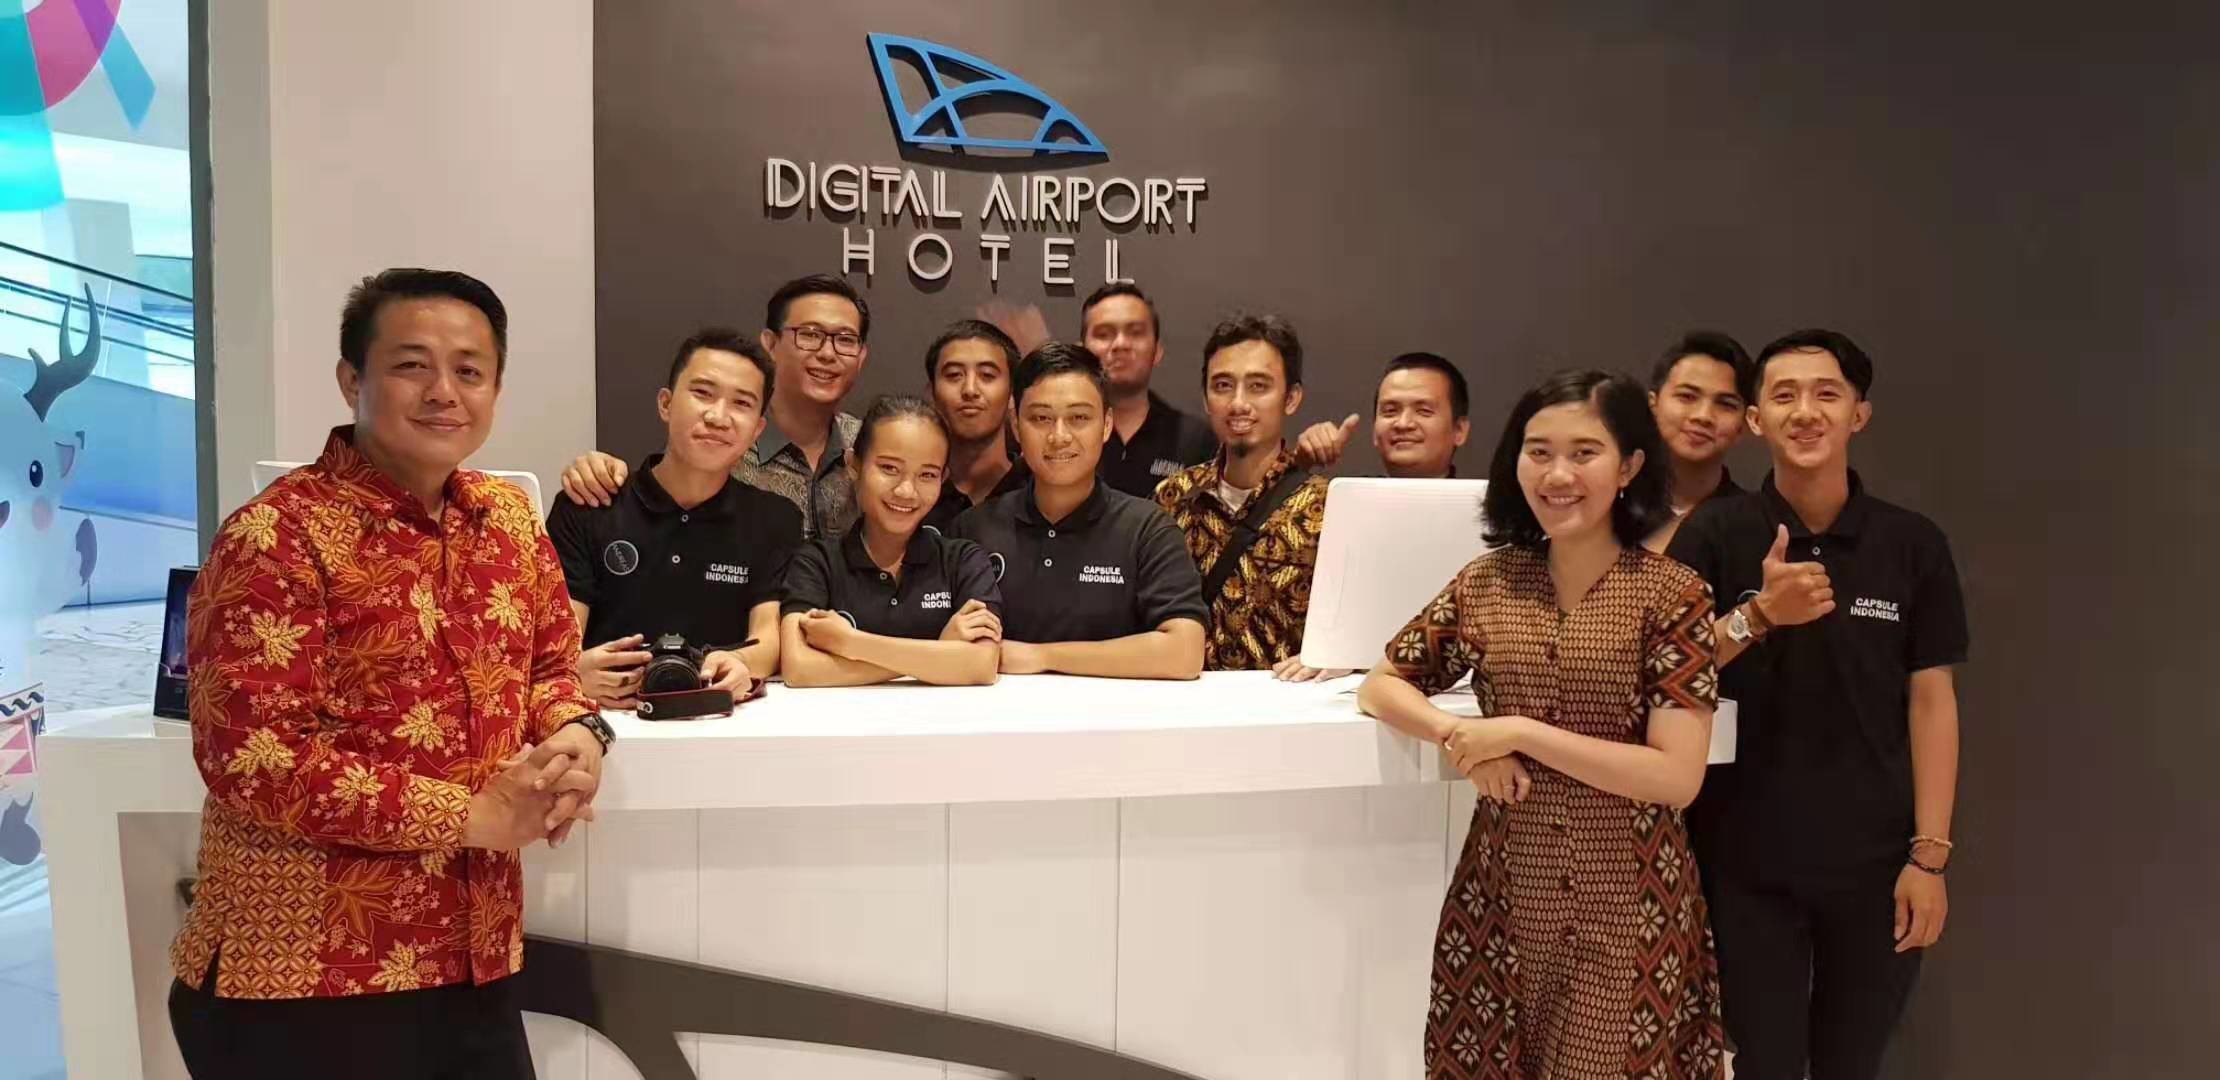 τελευταία εταιρεία περί Ξενοδοχείο καψών αερολιμένων της Τζακάρτα